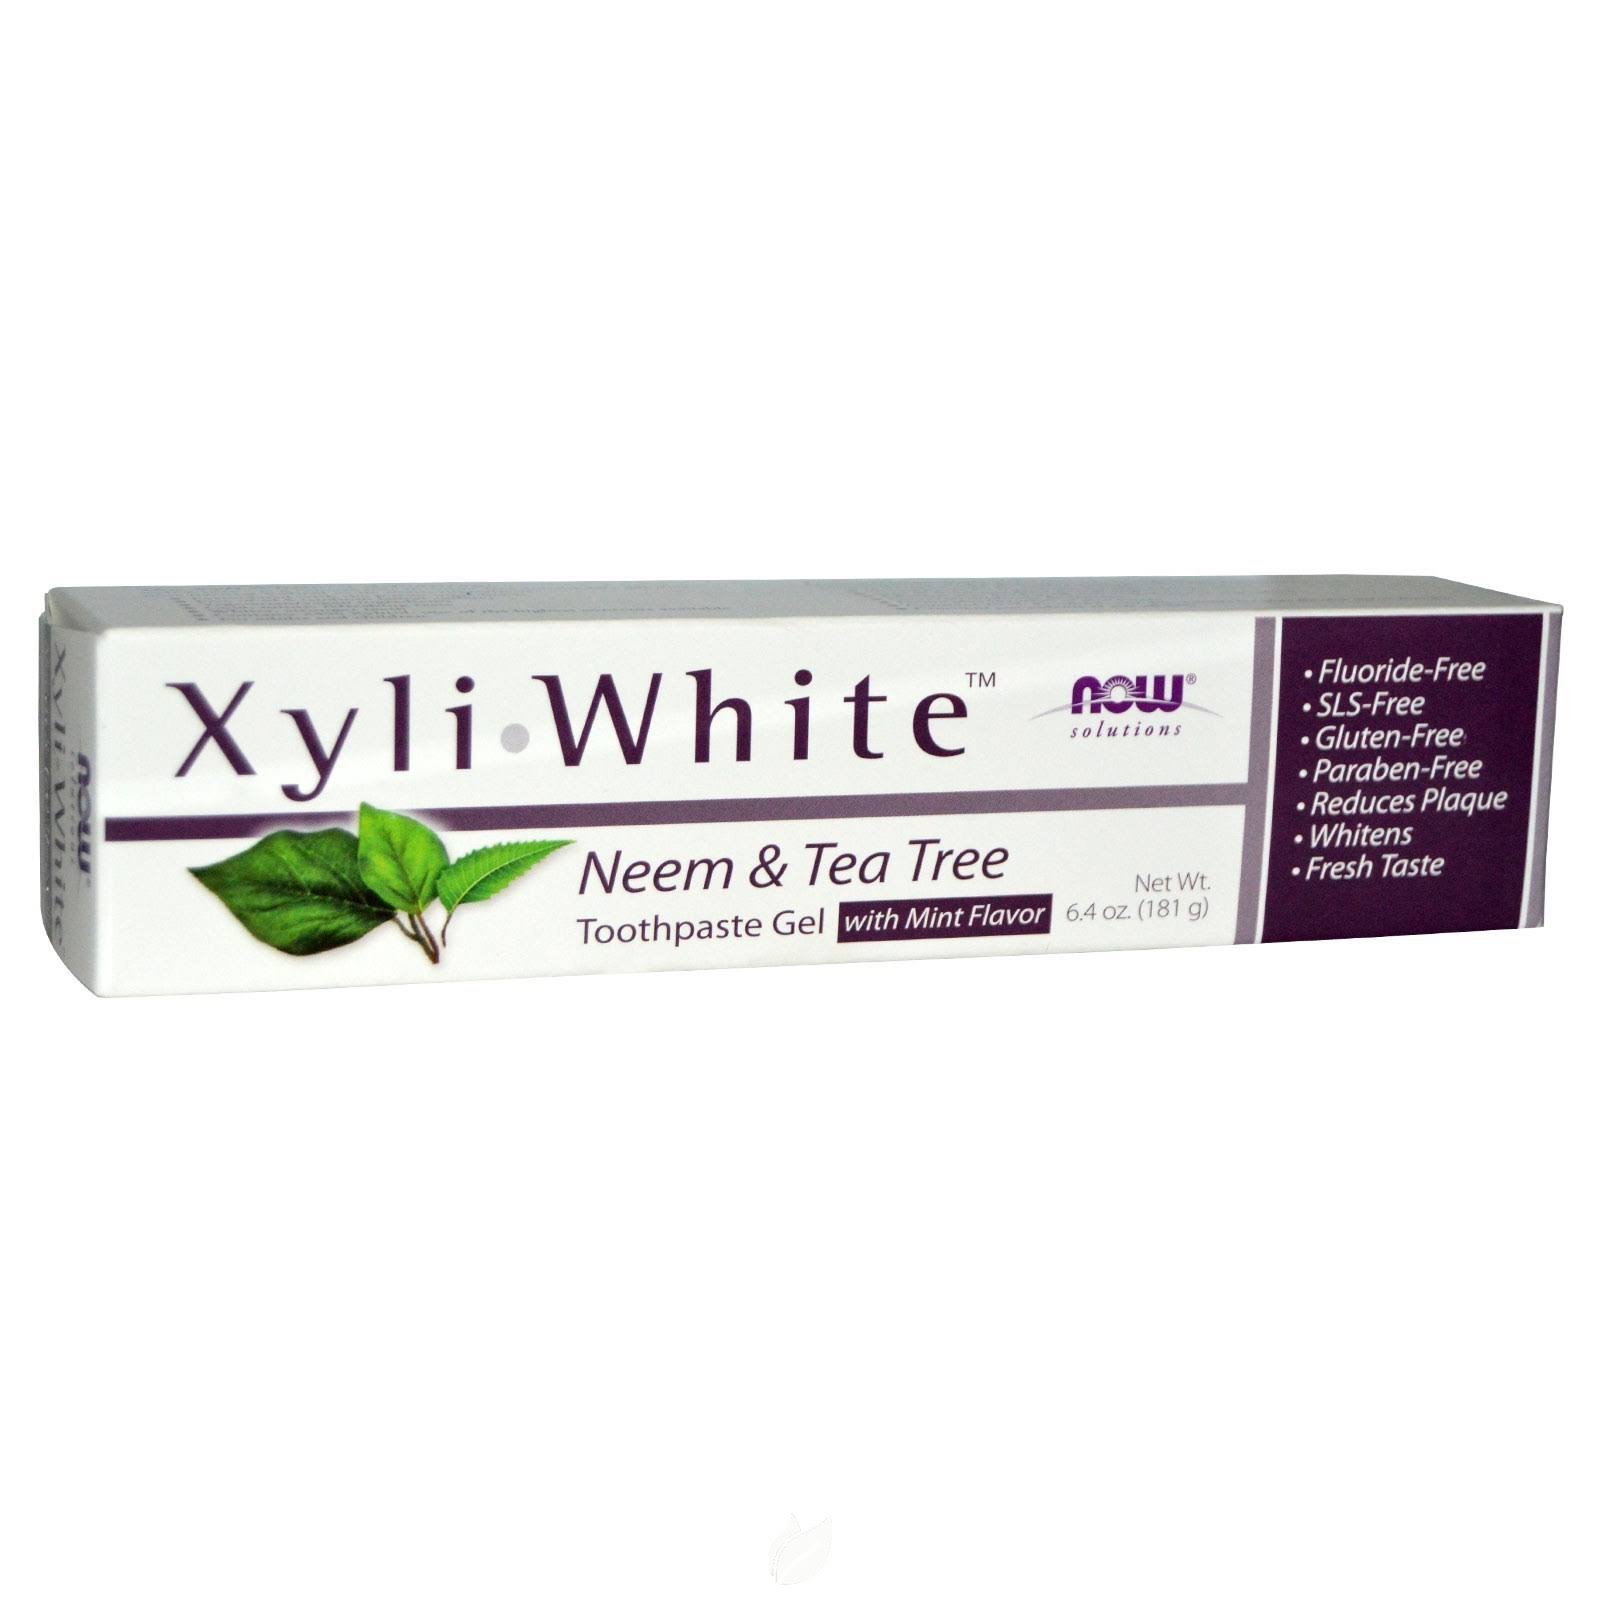 Xyliwhite Toothpaste - Neem and Tea Tree, 6.4oz